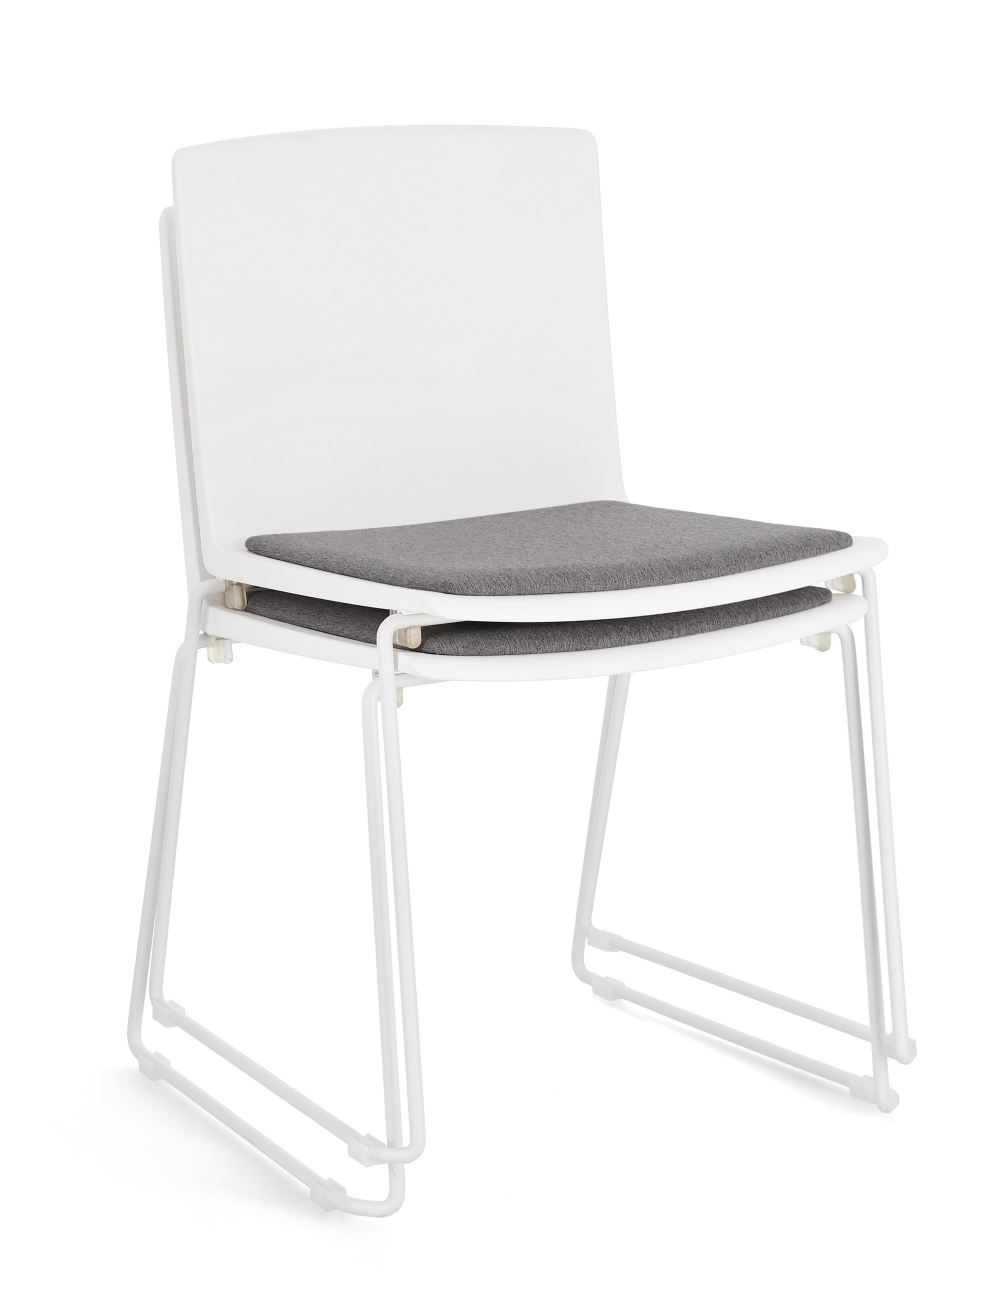 Der Esszimmerstuhl Giulia überzeugt mit seinem modernen Stil. Gefertigt wurde er aus Kunststoff, welches einen weißen Farbton besitzt. Das Gestell ist aus Metall und hat eine weiße Farbe. Der Stuhl besitzt eine Sitzhöhe von 46 cm.